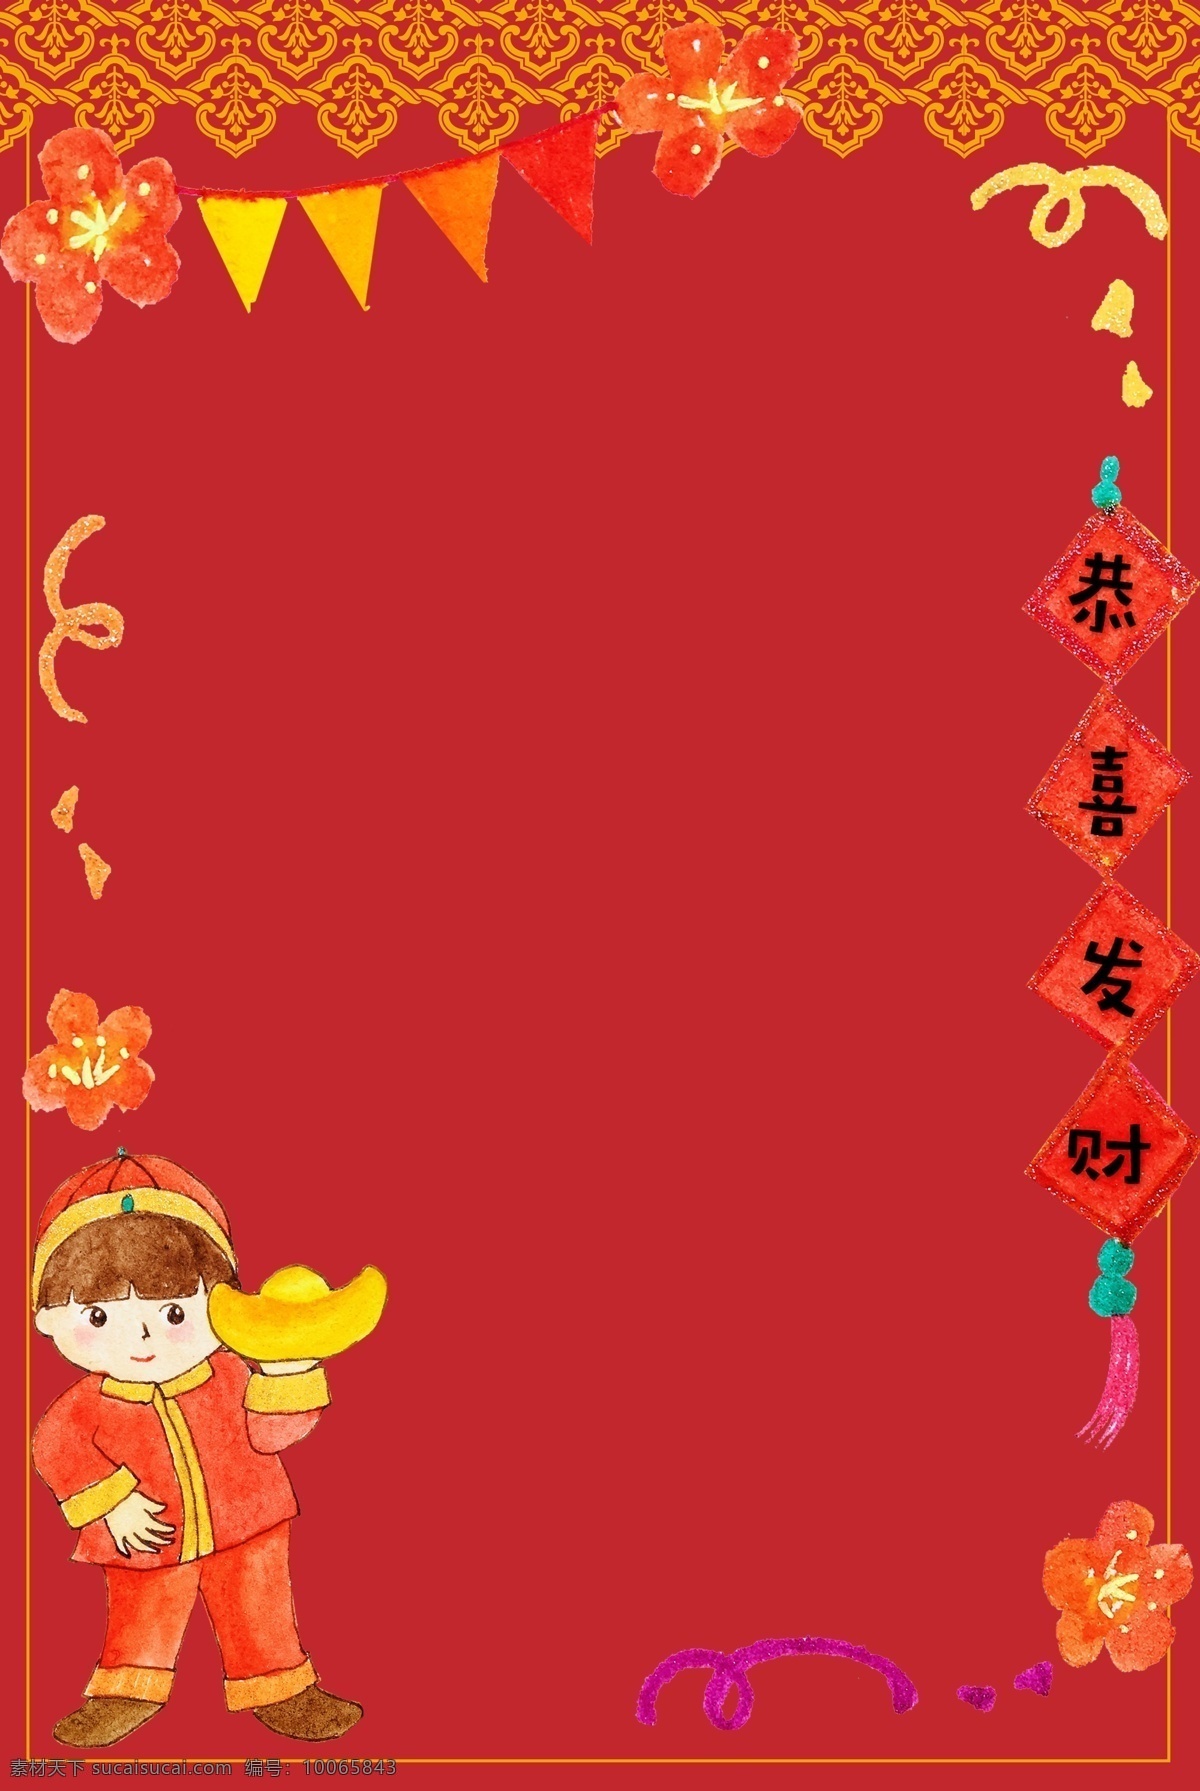 新 中式 中国 风 底纹 边框 背景 海报 卡通 手绘 中国风 简约 合成